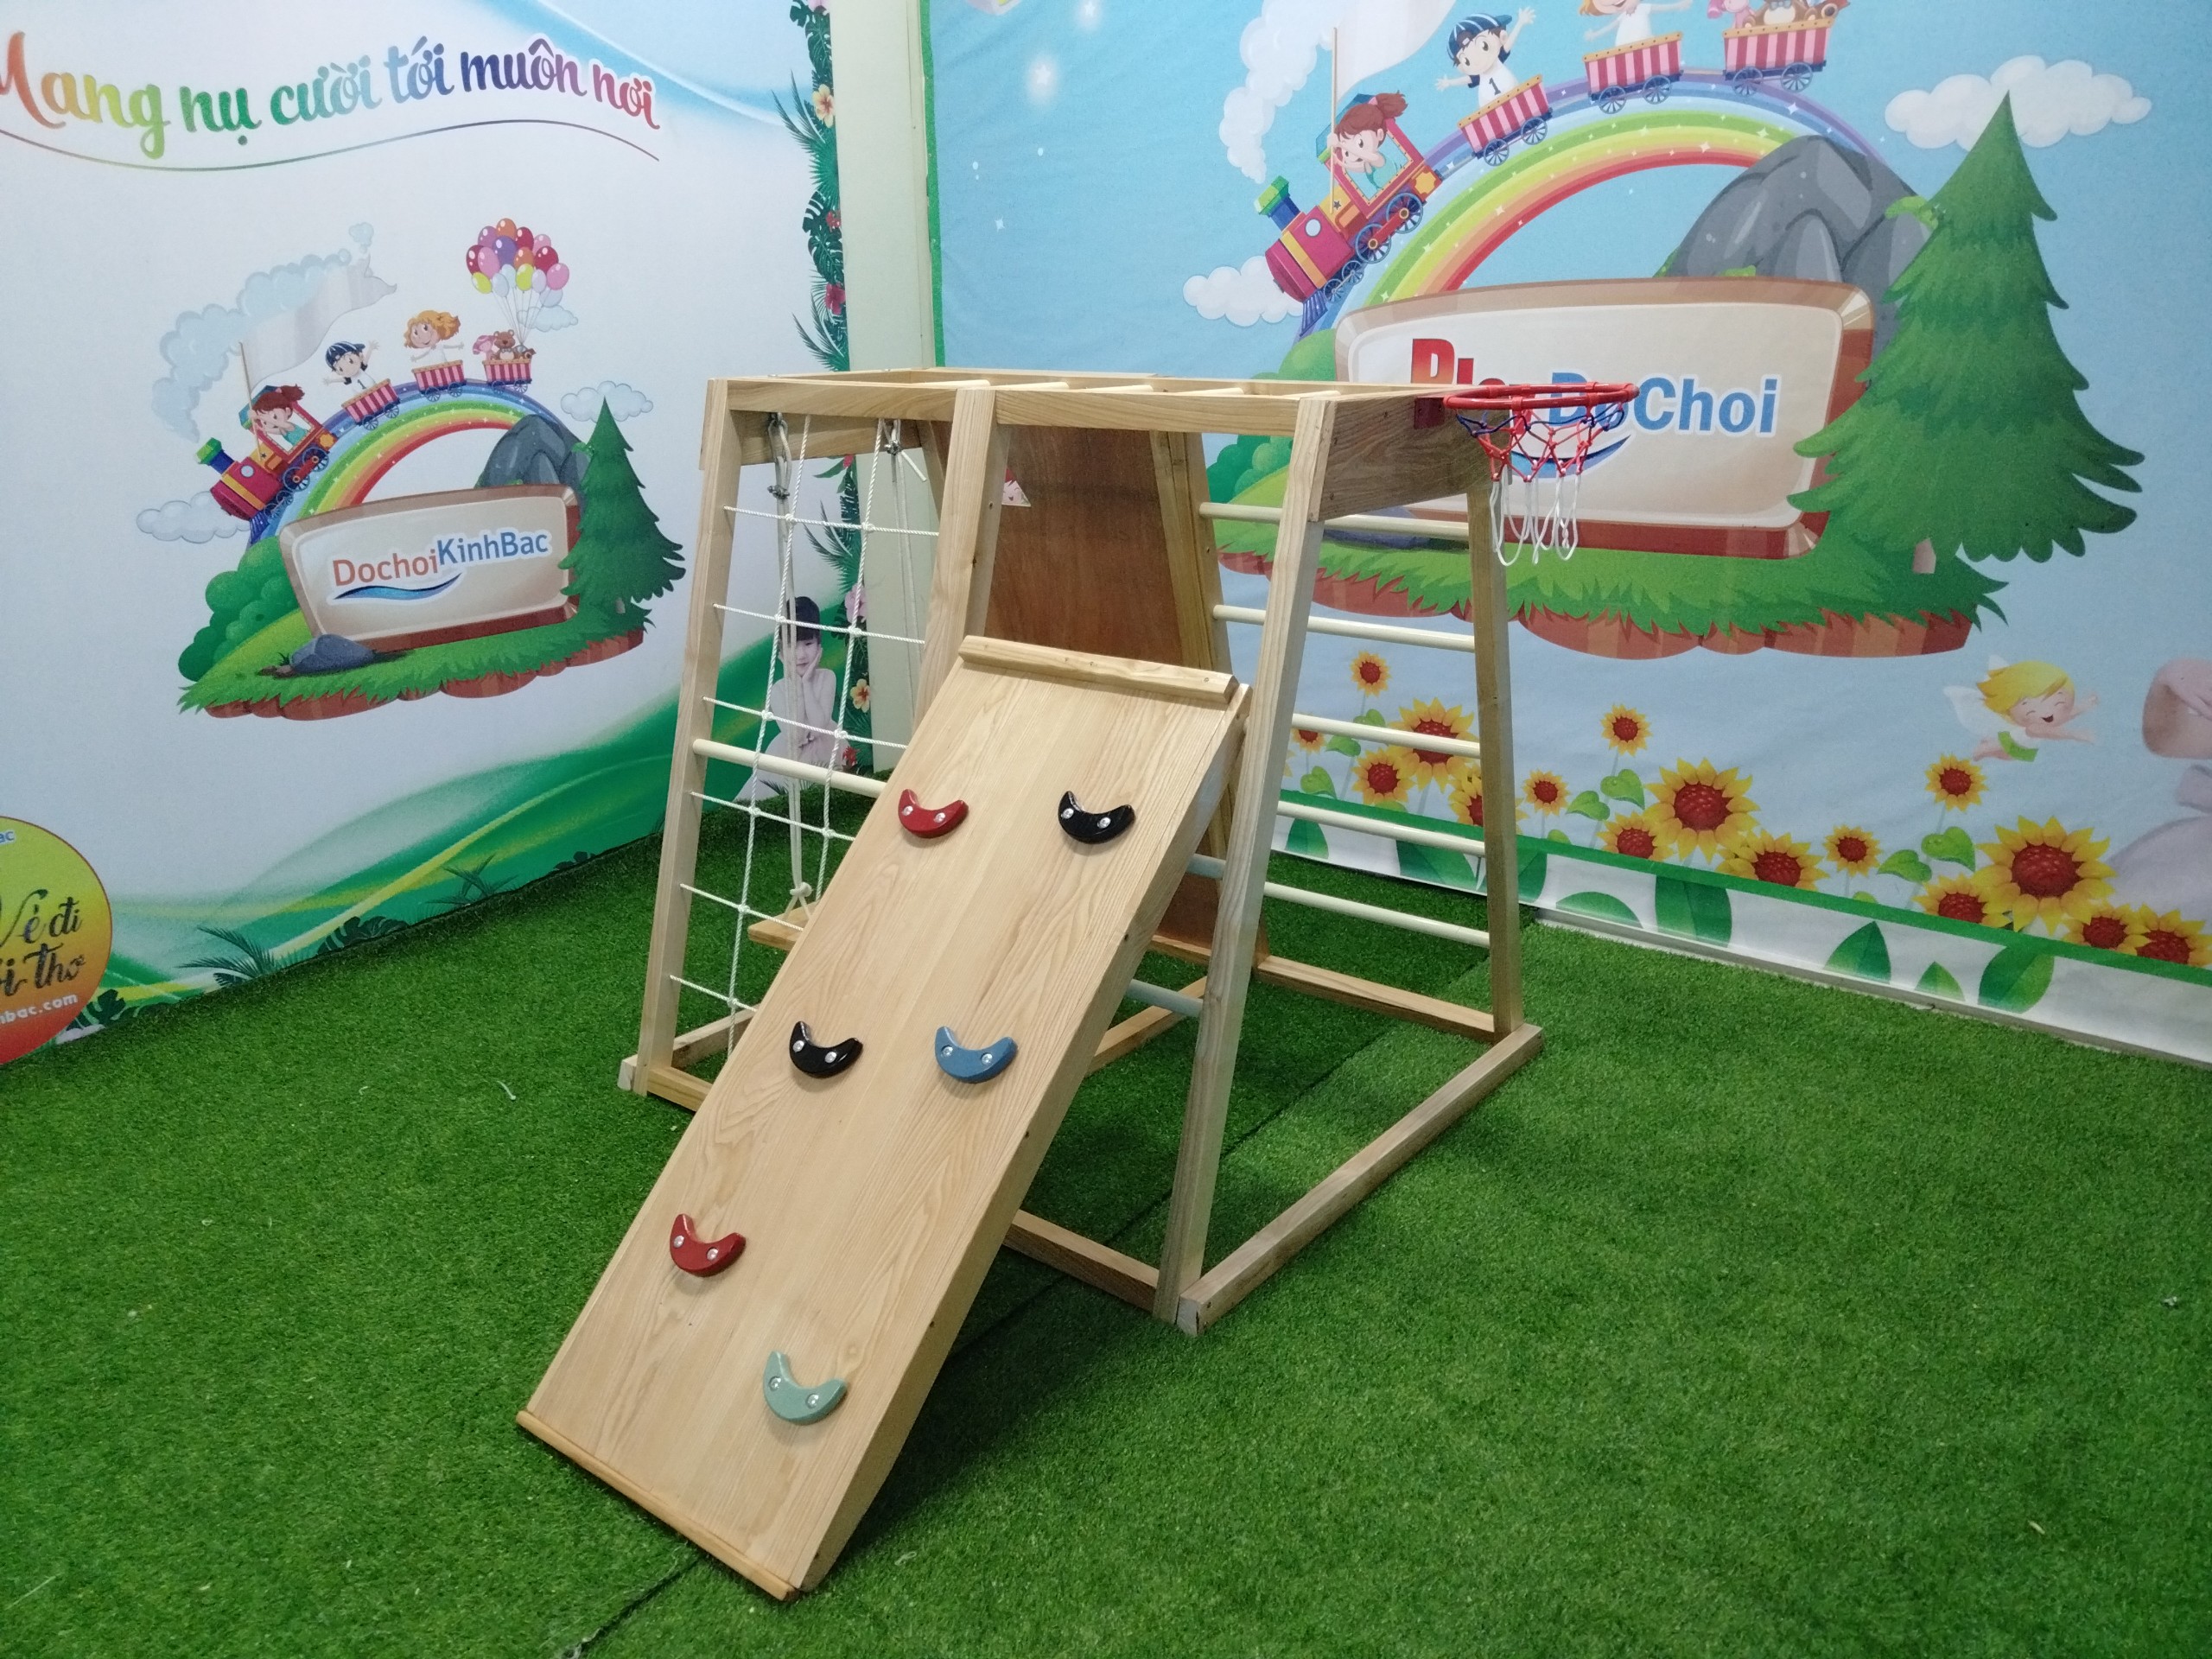 ​Đồ chơi Kinh Bắc cung cấp bộ vận động xà đu đa năng tại Minh Khai, TP Hưng Yên, Hưng Yên